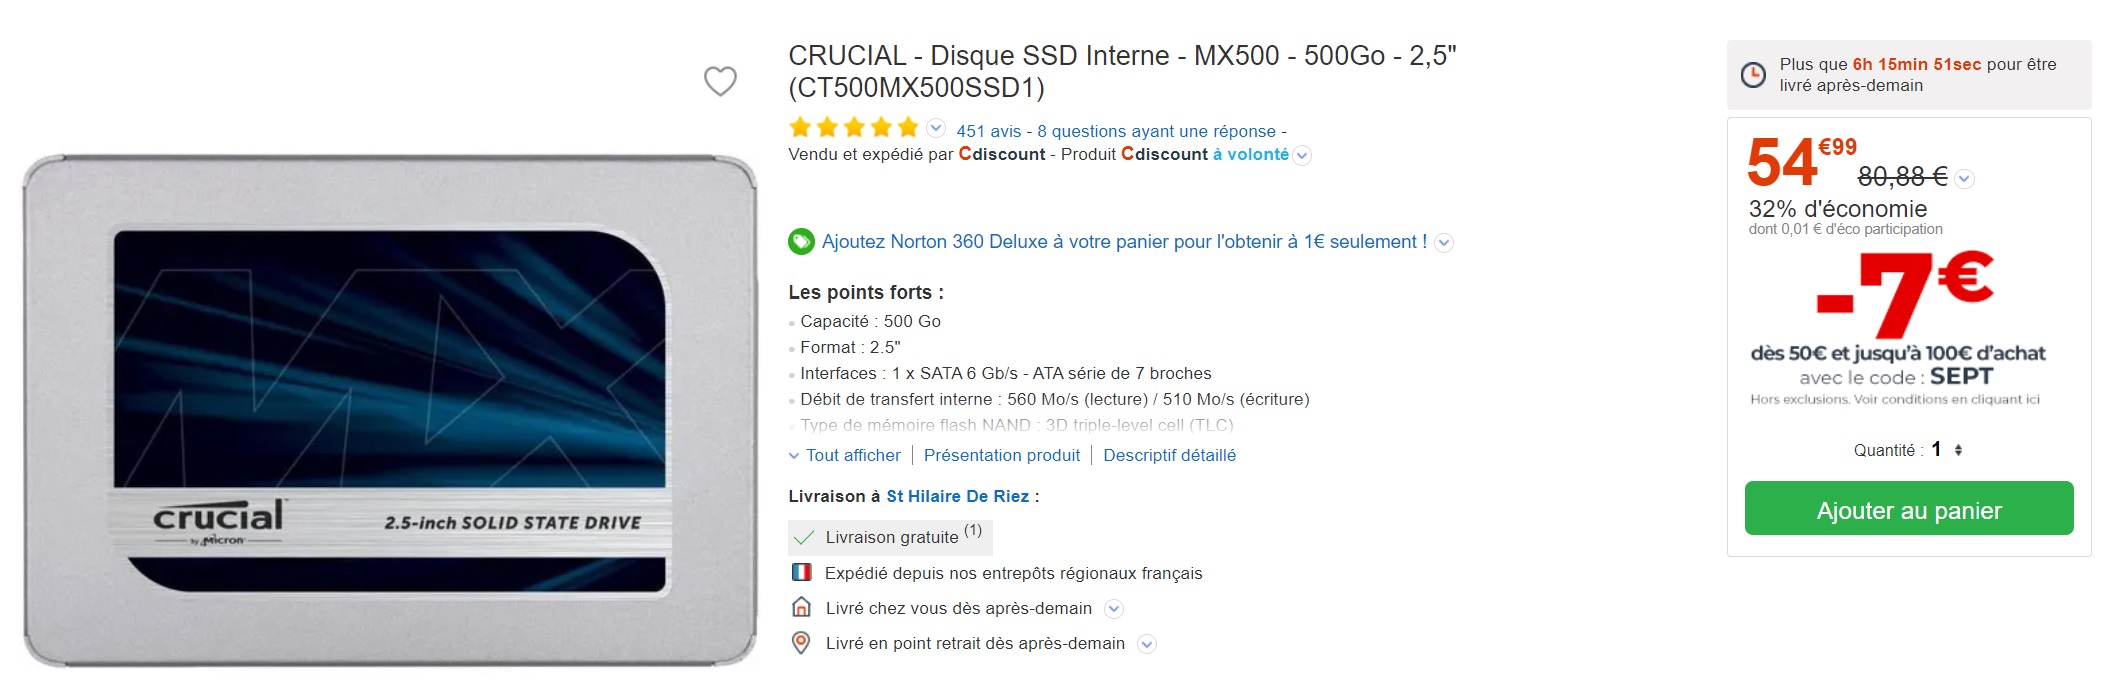 Le SSD Crucial MX500 de 500 Go est à un excellent prix grâce à ce code promo